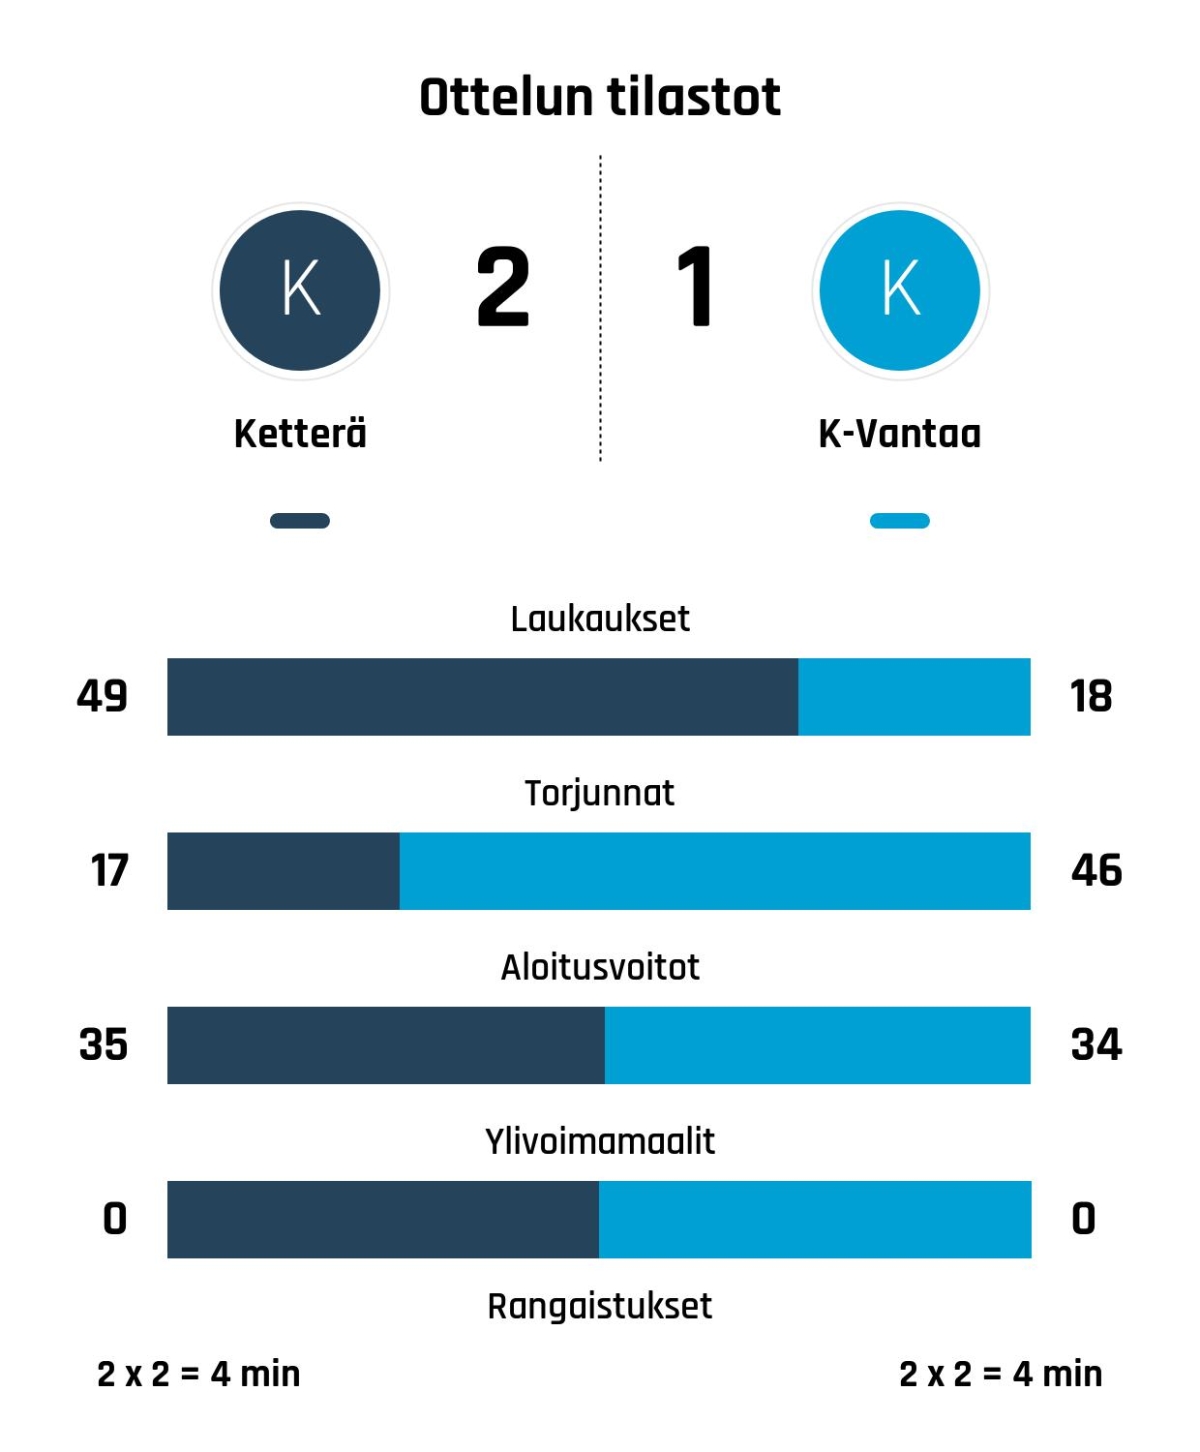 Ketterä nousi rinnalle ja ohi – K-Vantaa kaatui 2-1